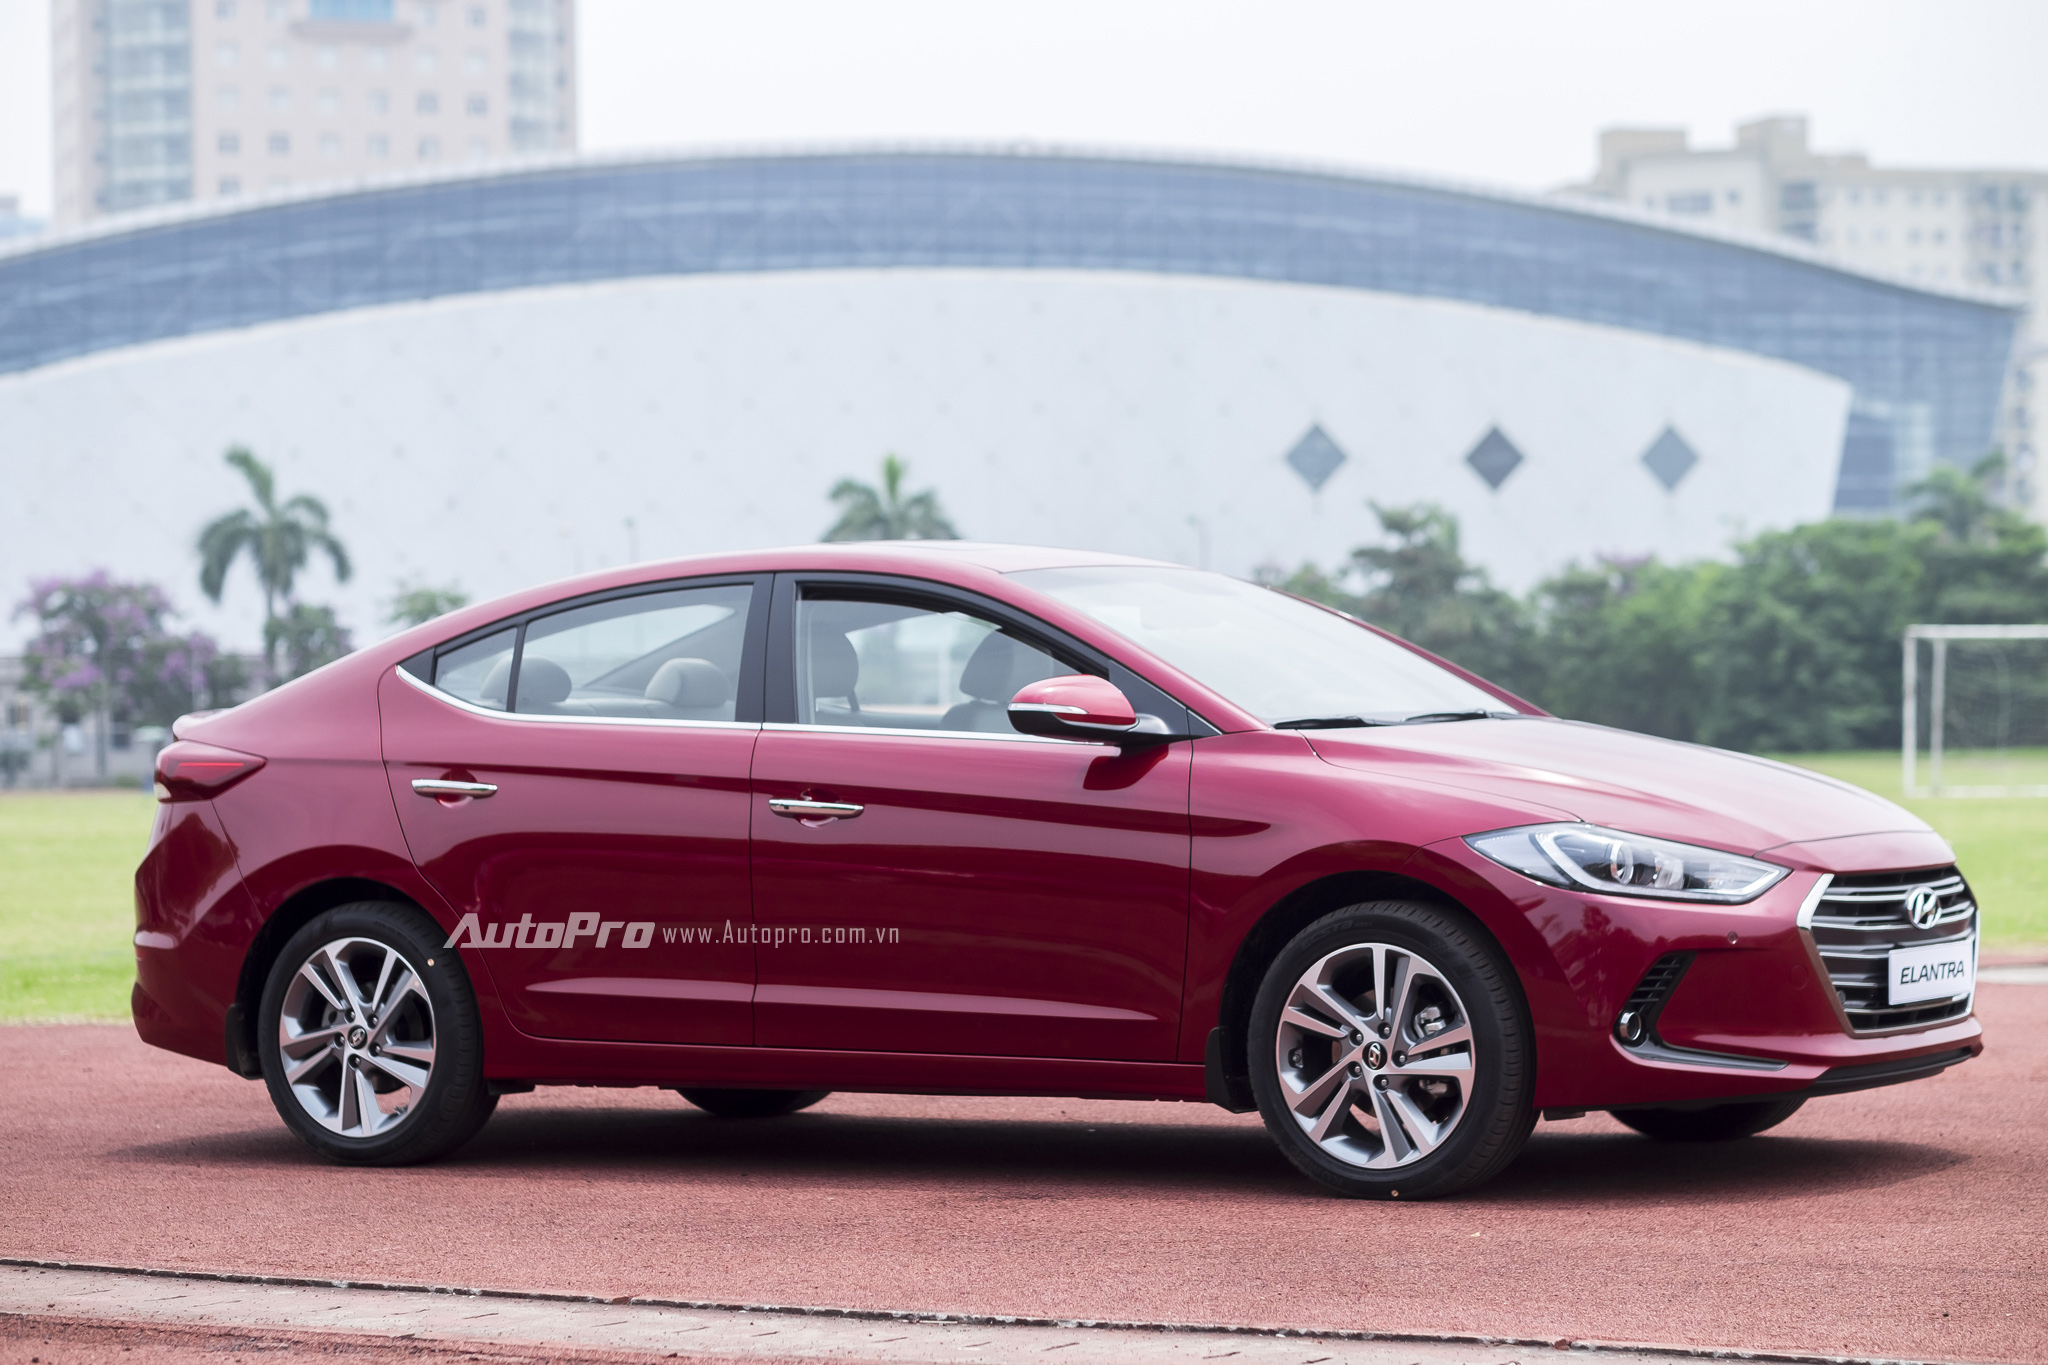 
Hyundai Elantra 2016 vừa được ra mắt tại Việt Nam thuộc thế hệ thứ 6 của dòng xe này với thiết kế cá tính, mạnh mẽ và bắt mắt hơn.
